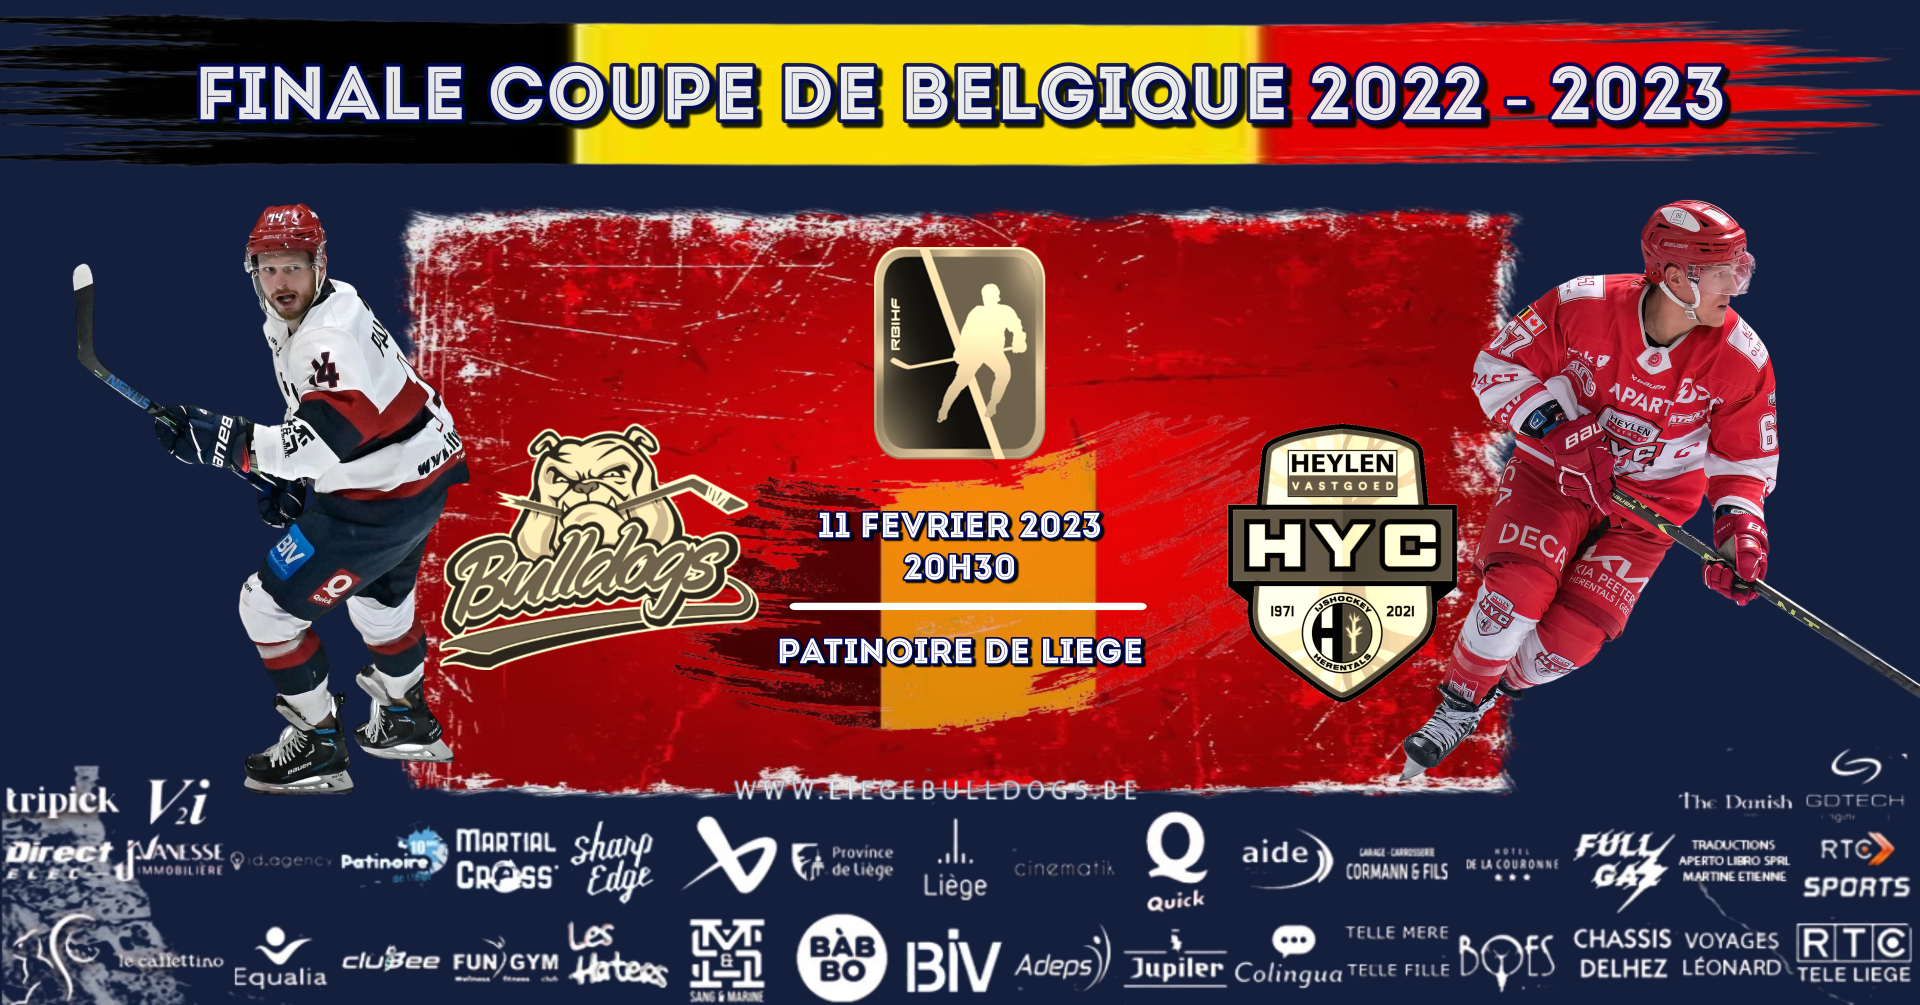 FINALE COUPE DE BELGIQUE RBIHF 2022 - 2023 : BULLDOGS DE LIEGE VS HEYLENVASTGOED HYC à la Patinoire de LIEGE